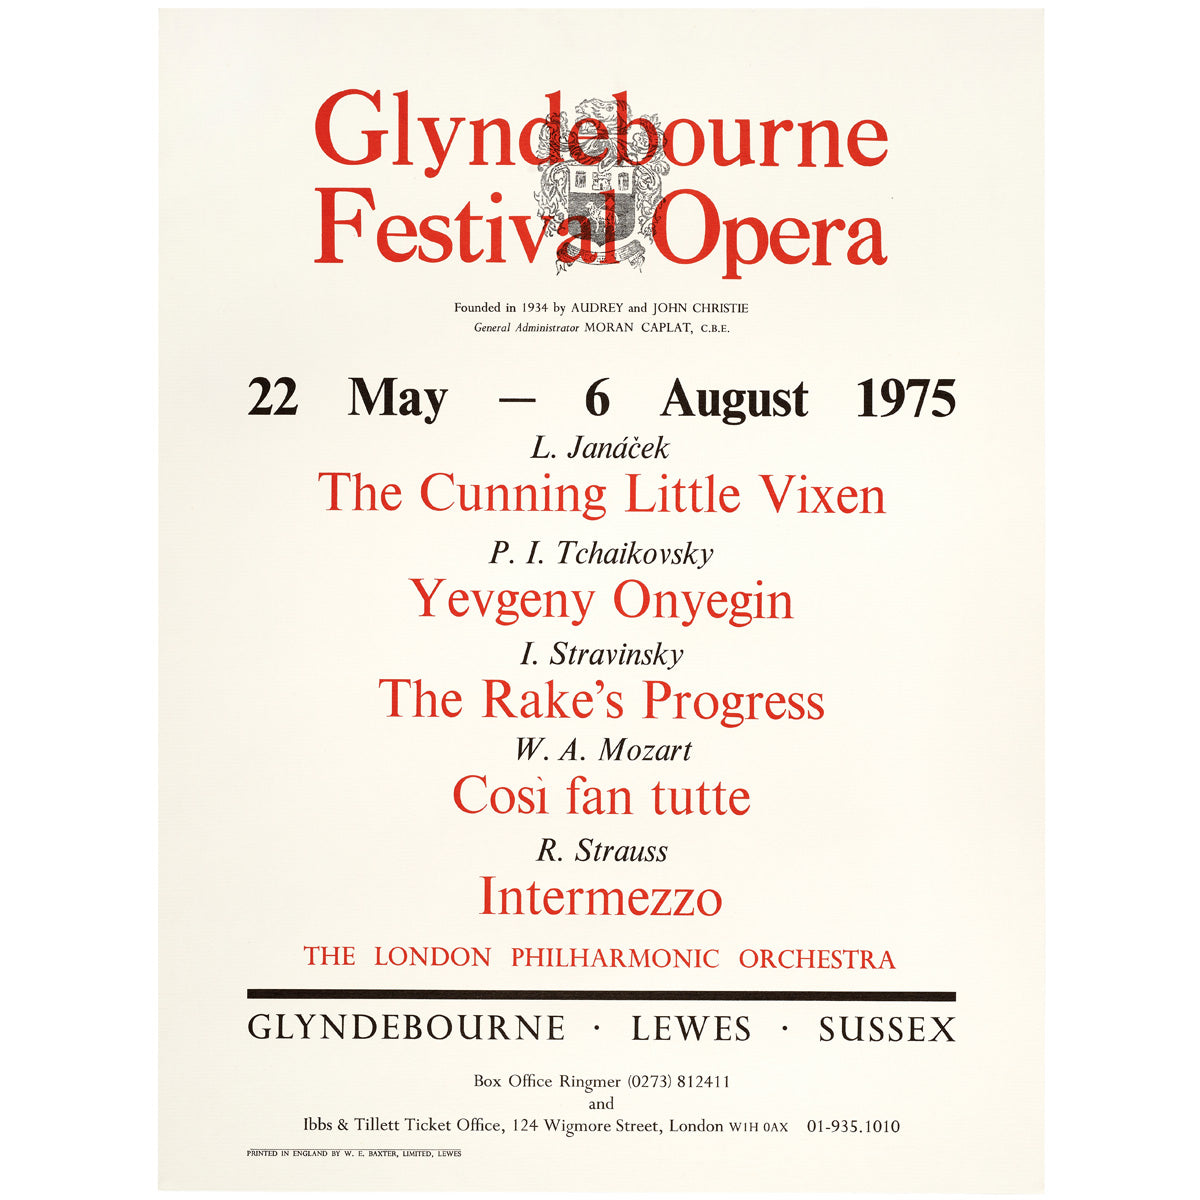 Glyndebourne Festival Opera 1975 Poster Glyndebourne Shop